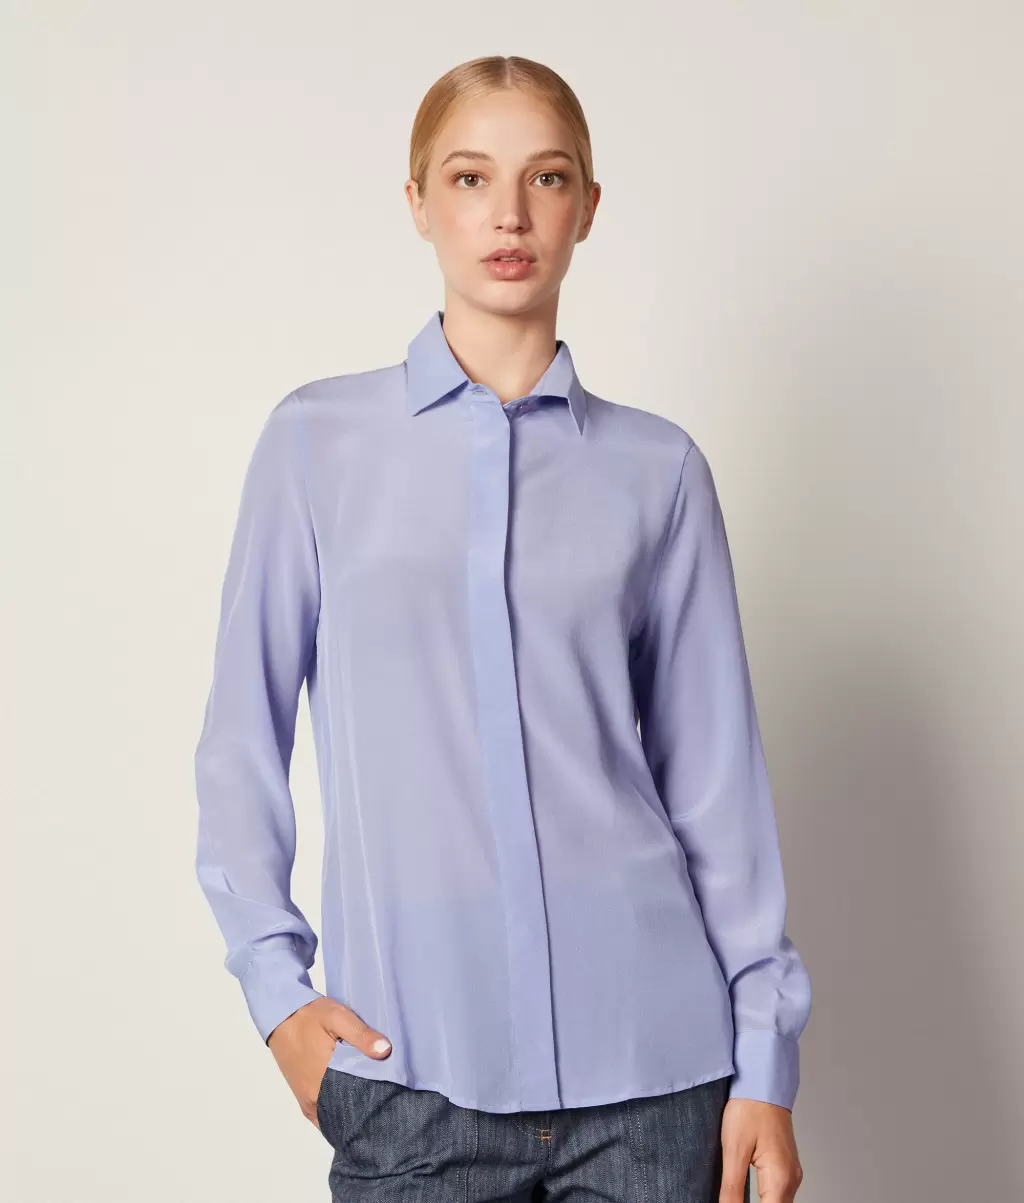 Koszule I Bluzki Kobieta Jedwabna Koszula Z Kołnierzykiem Light_Blue Falconeri - 1